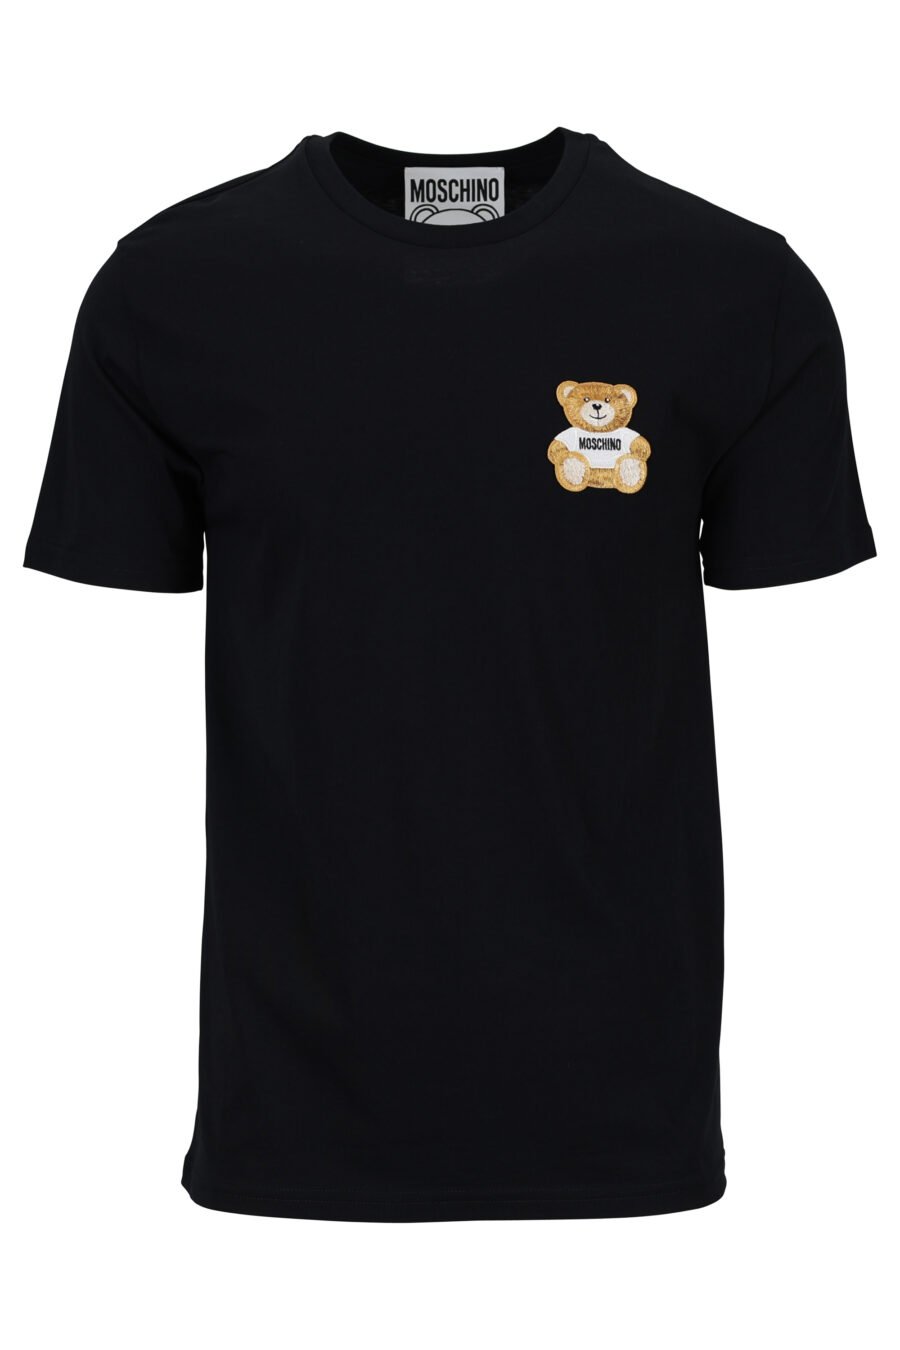 Camiseta negra eco con minilogo oso - 889316853063